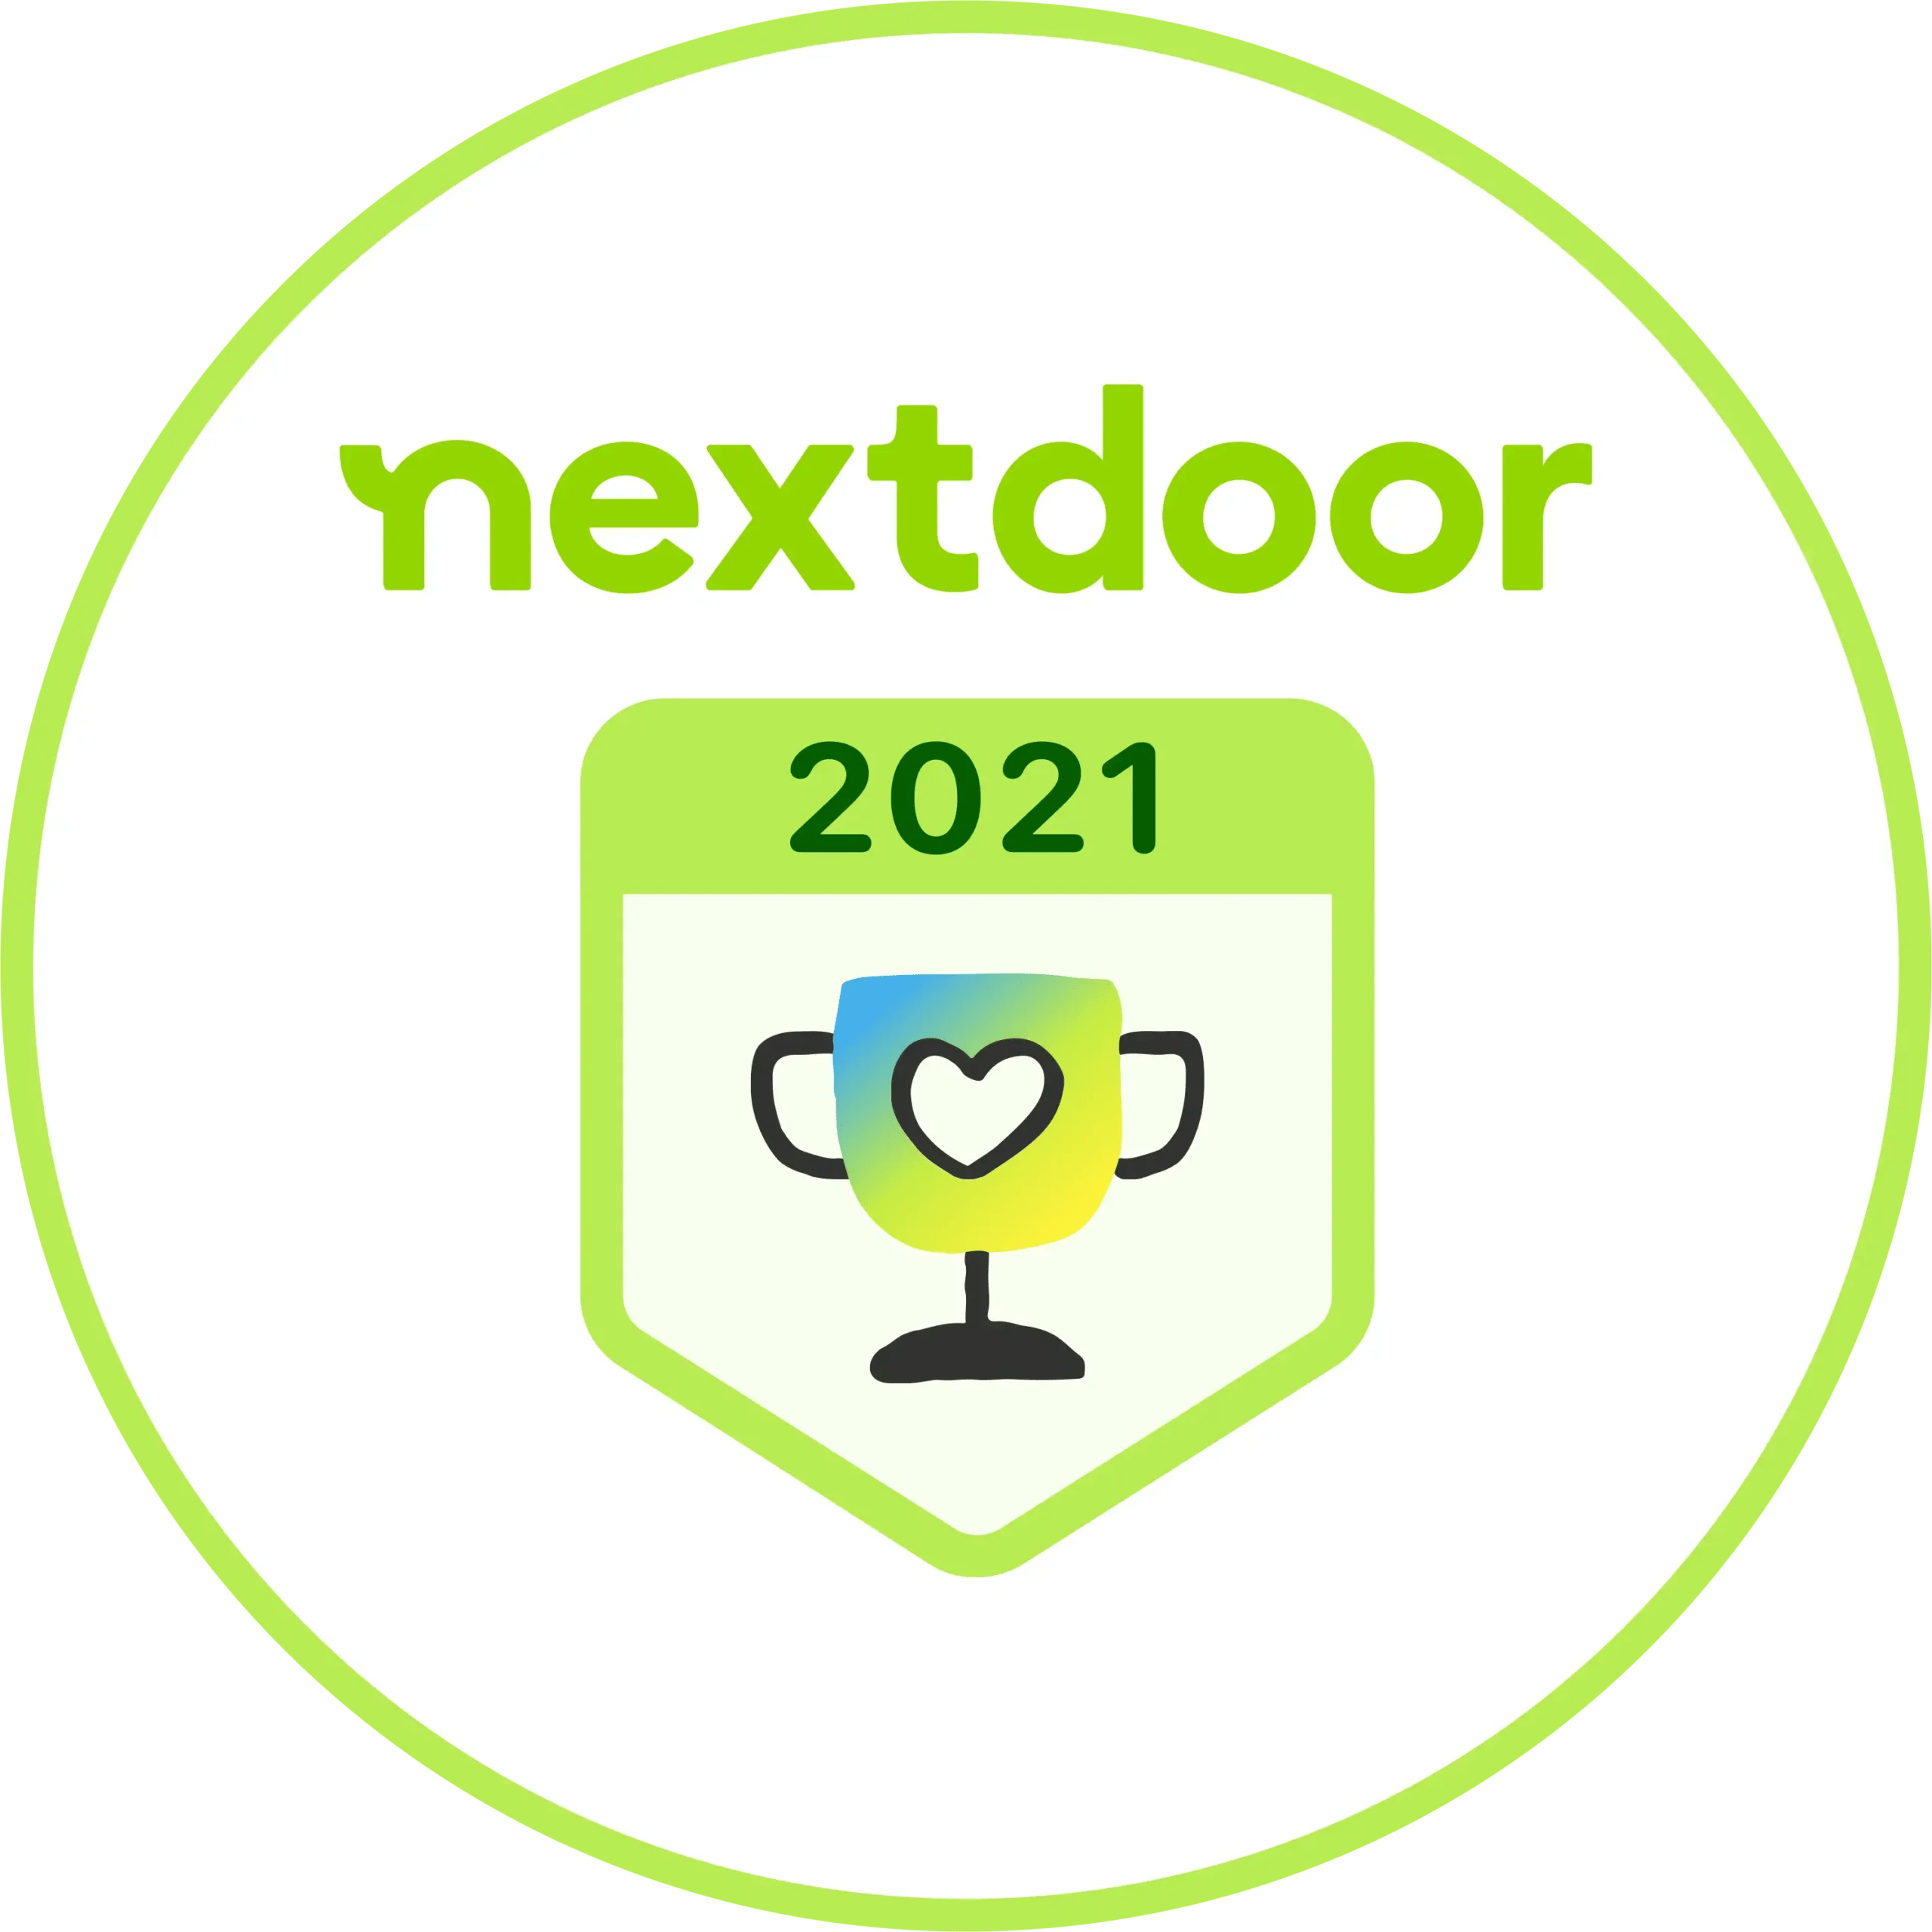 Nextdoor 2021